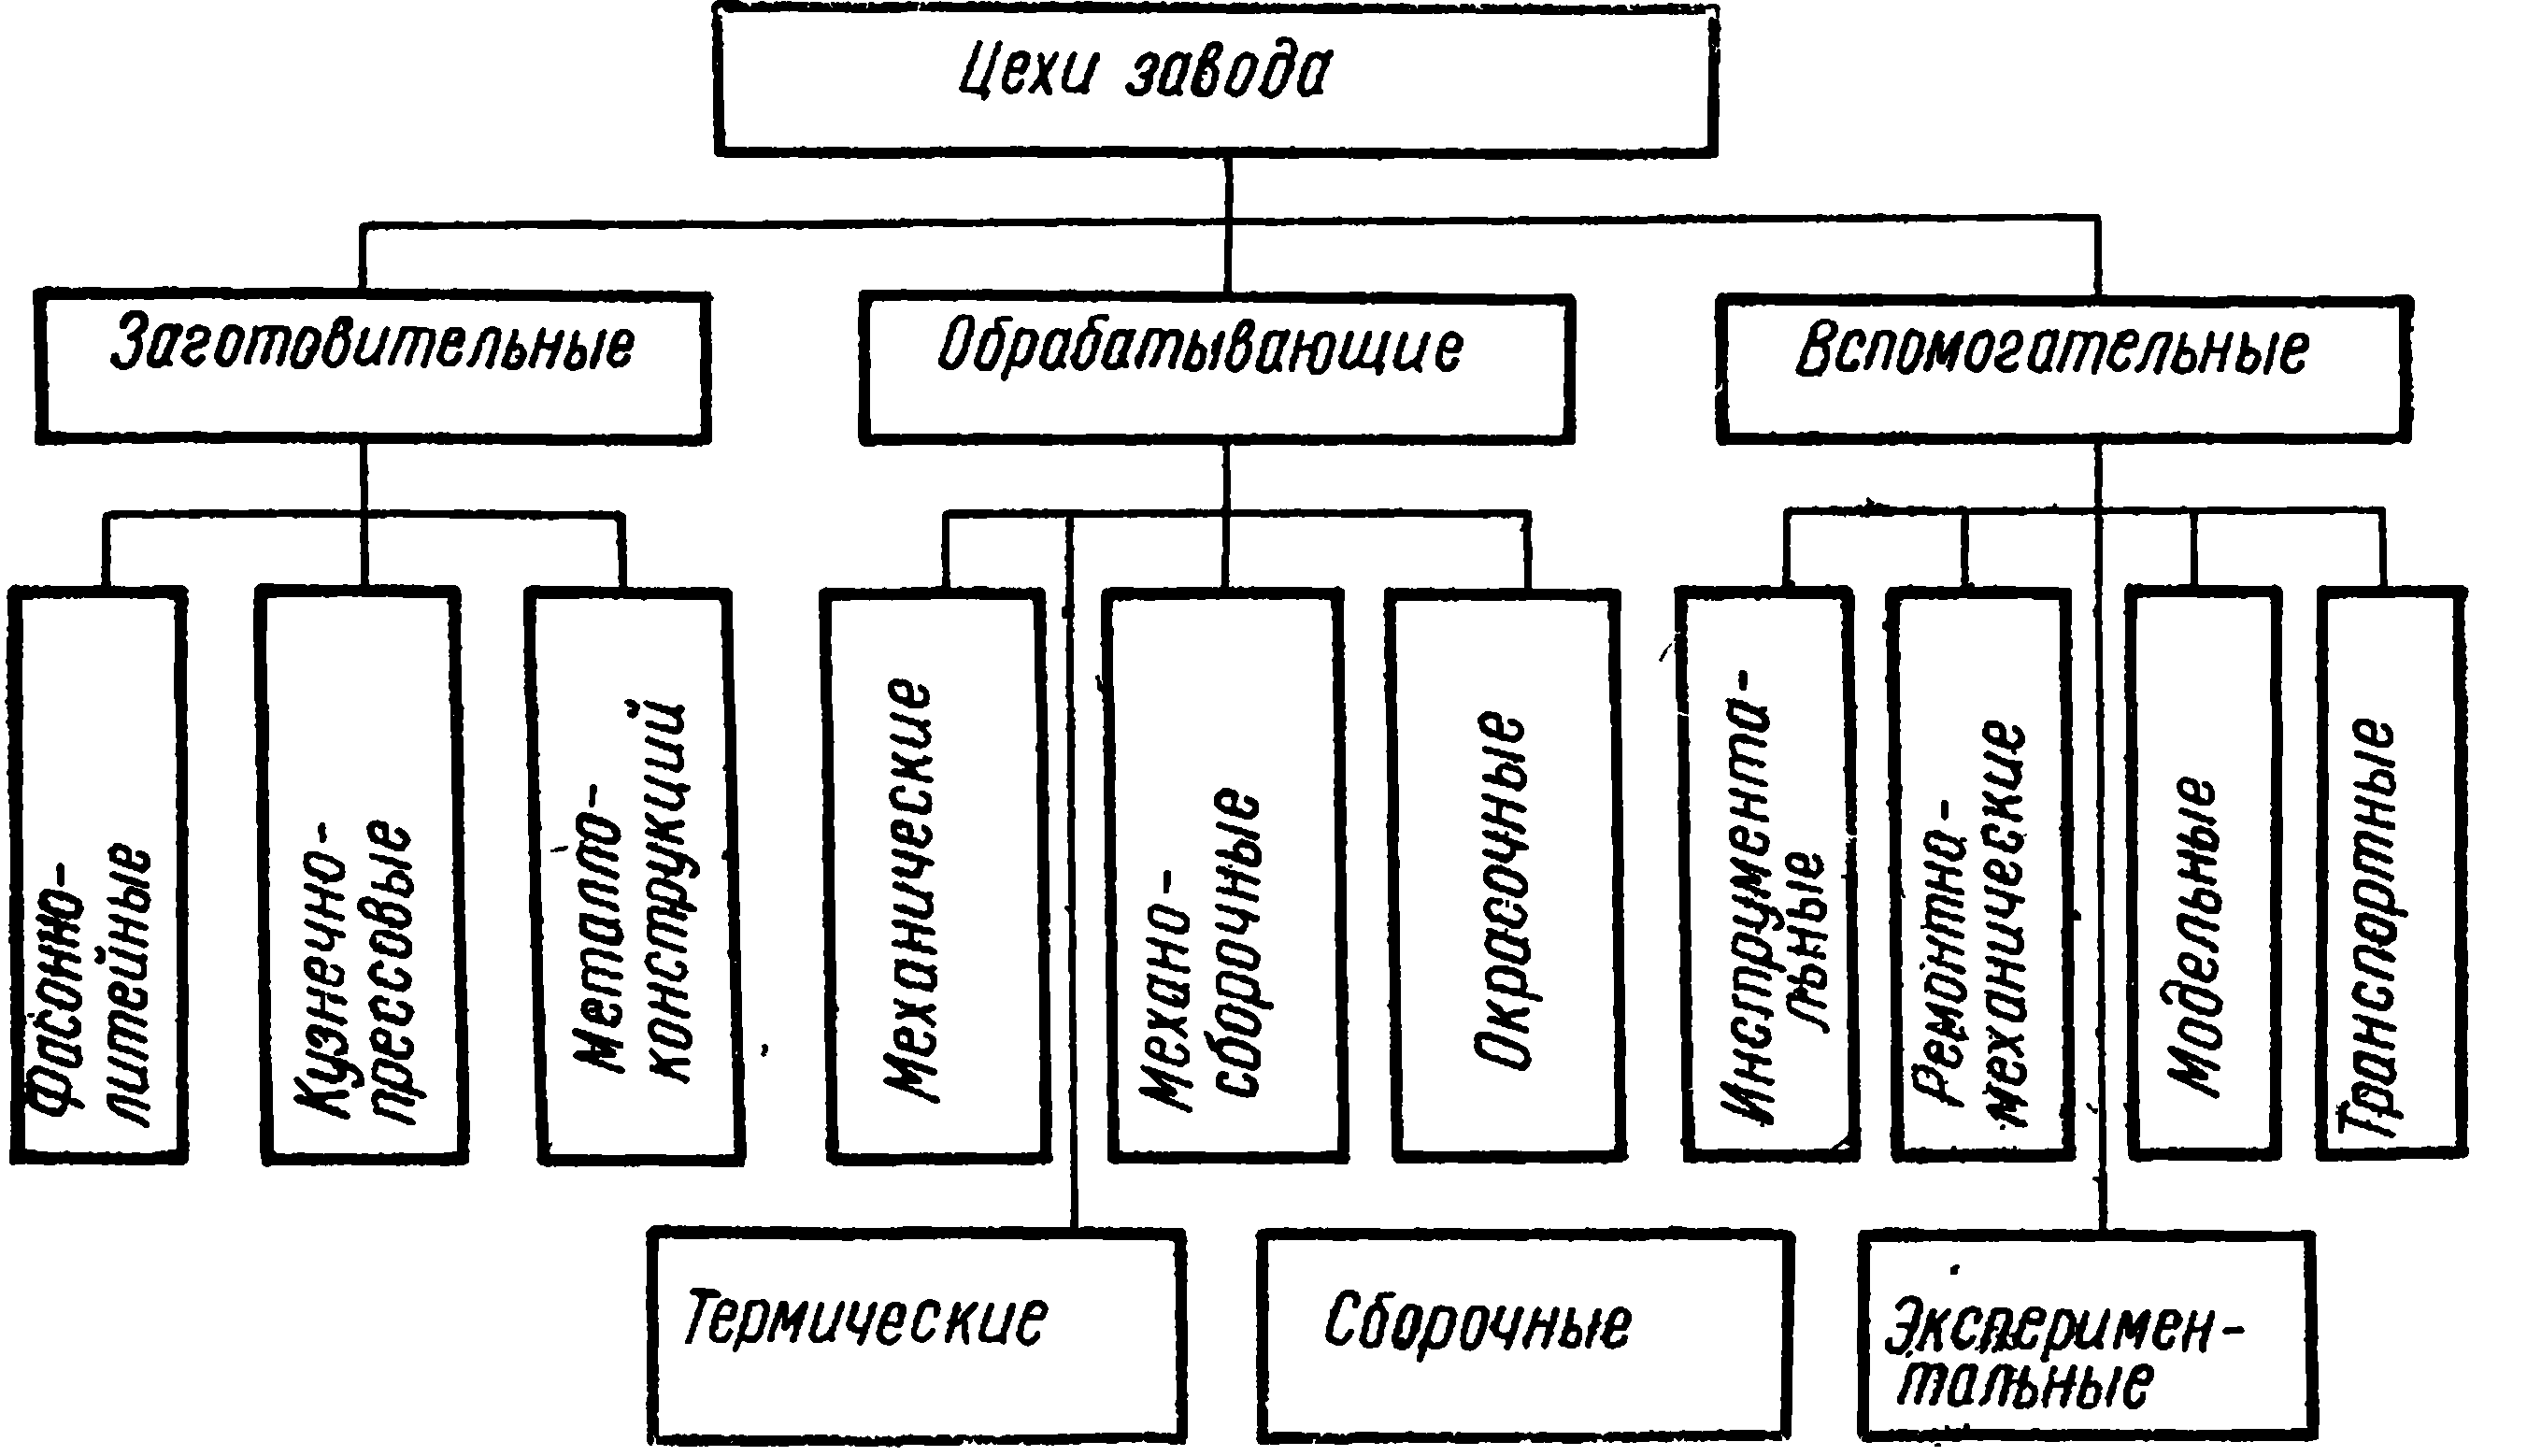 мебельное производство организация структура